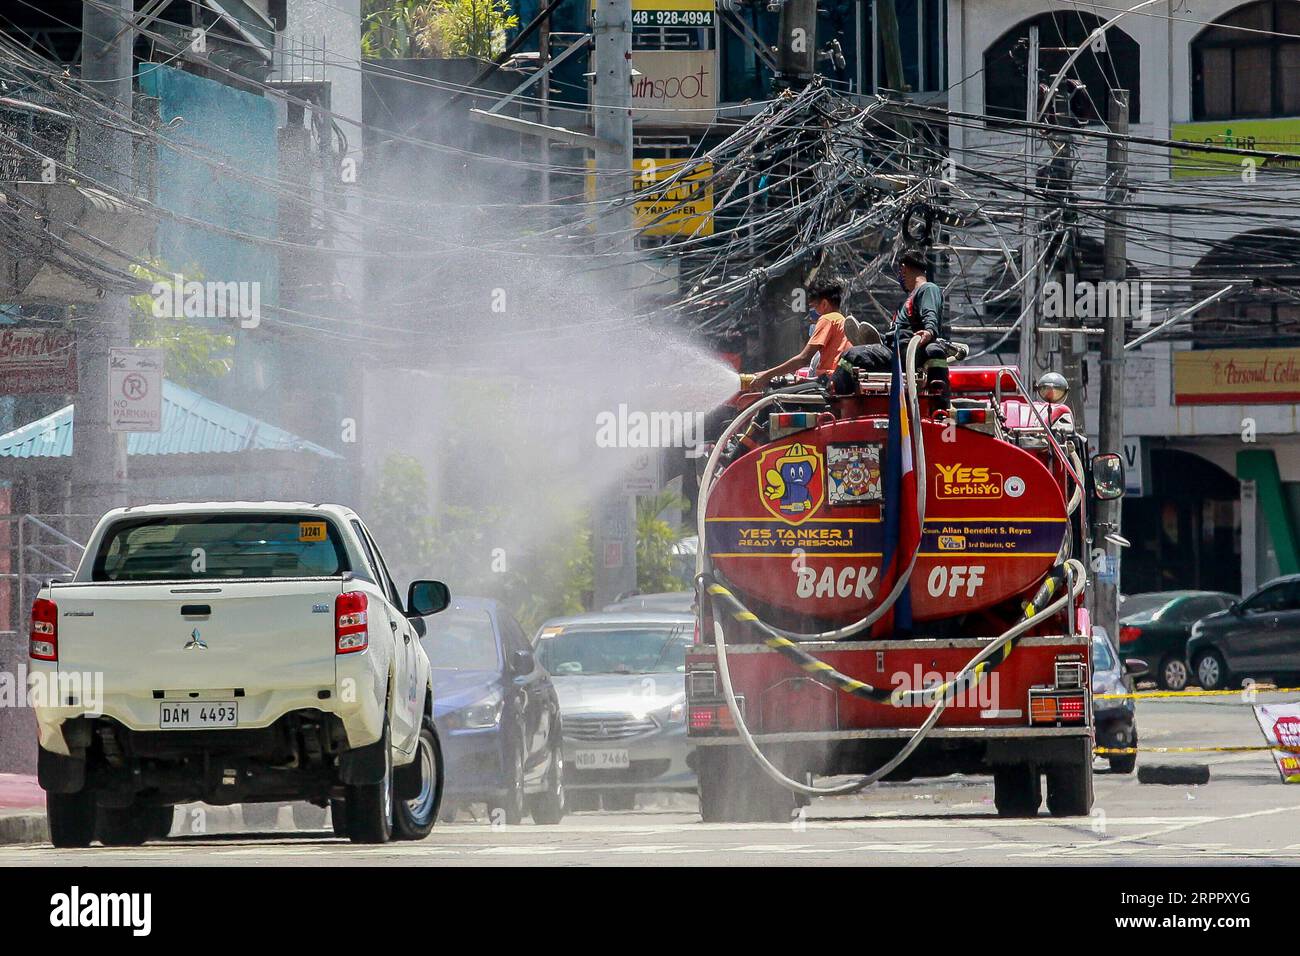 200323 -- QUEZON CITY, 23. März 2020 -- Feuerwehrmänner auf einem Feuerwehrspray Desinfektionsmittel auf einer Straße in Quezon City, Philippinen, 23. März 2020. Die Zahl der COVID-19-Fälle auf den Philippinen ist auf 462 gestiegen, sagte das Gesundheitsministerium des Landes am Montag. Das DOH sagte in einem Bericht, dass 33 Menschen an der hochinfektiösen Krankheit gestorben sind, während sich 18 erholt haben. PHILIPPINEN-COVID-19-MEASURES ROUELLExUMALI PUBLICATIONxNOTxINxCHN Stockfoto